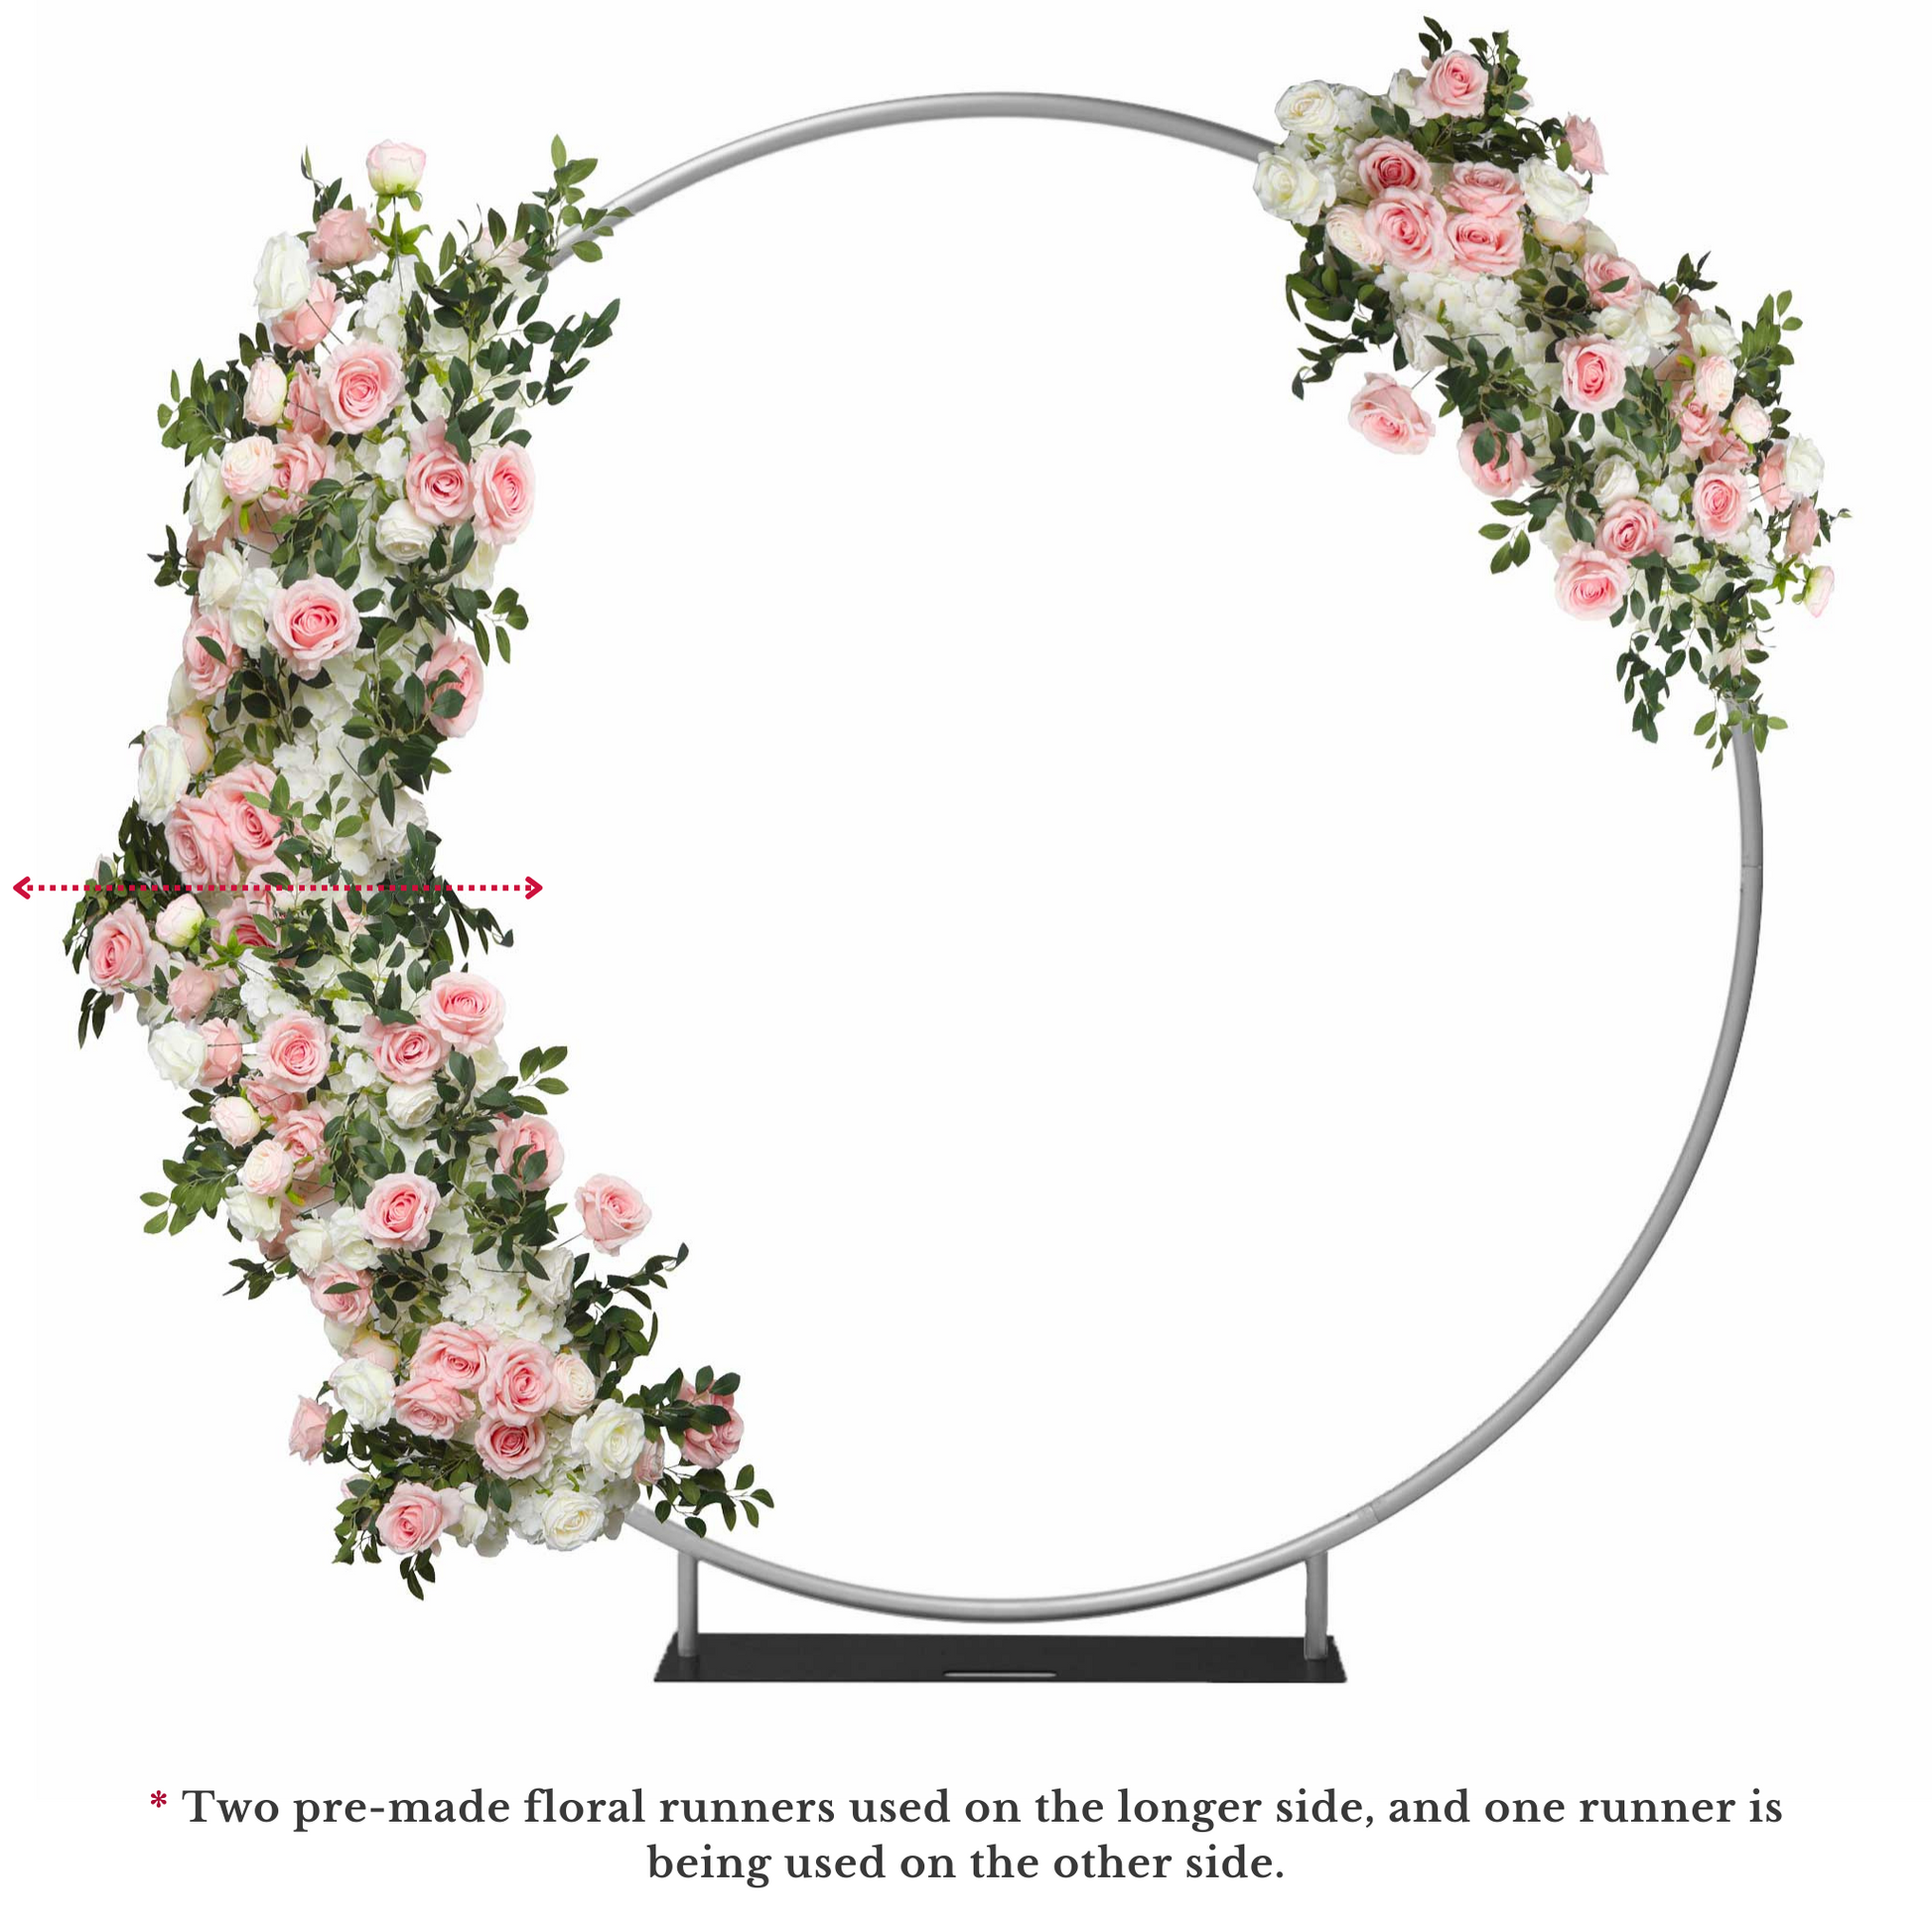 Premade Flower Backdrop Arch/Table Runner Decor - Light Pink & White